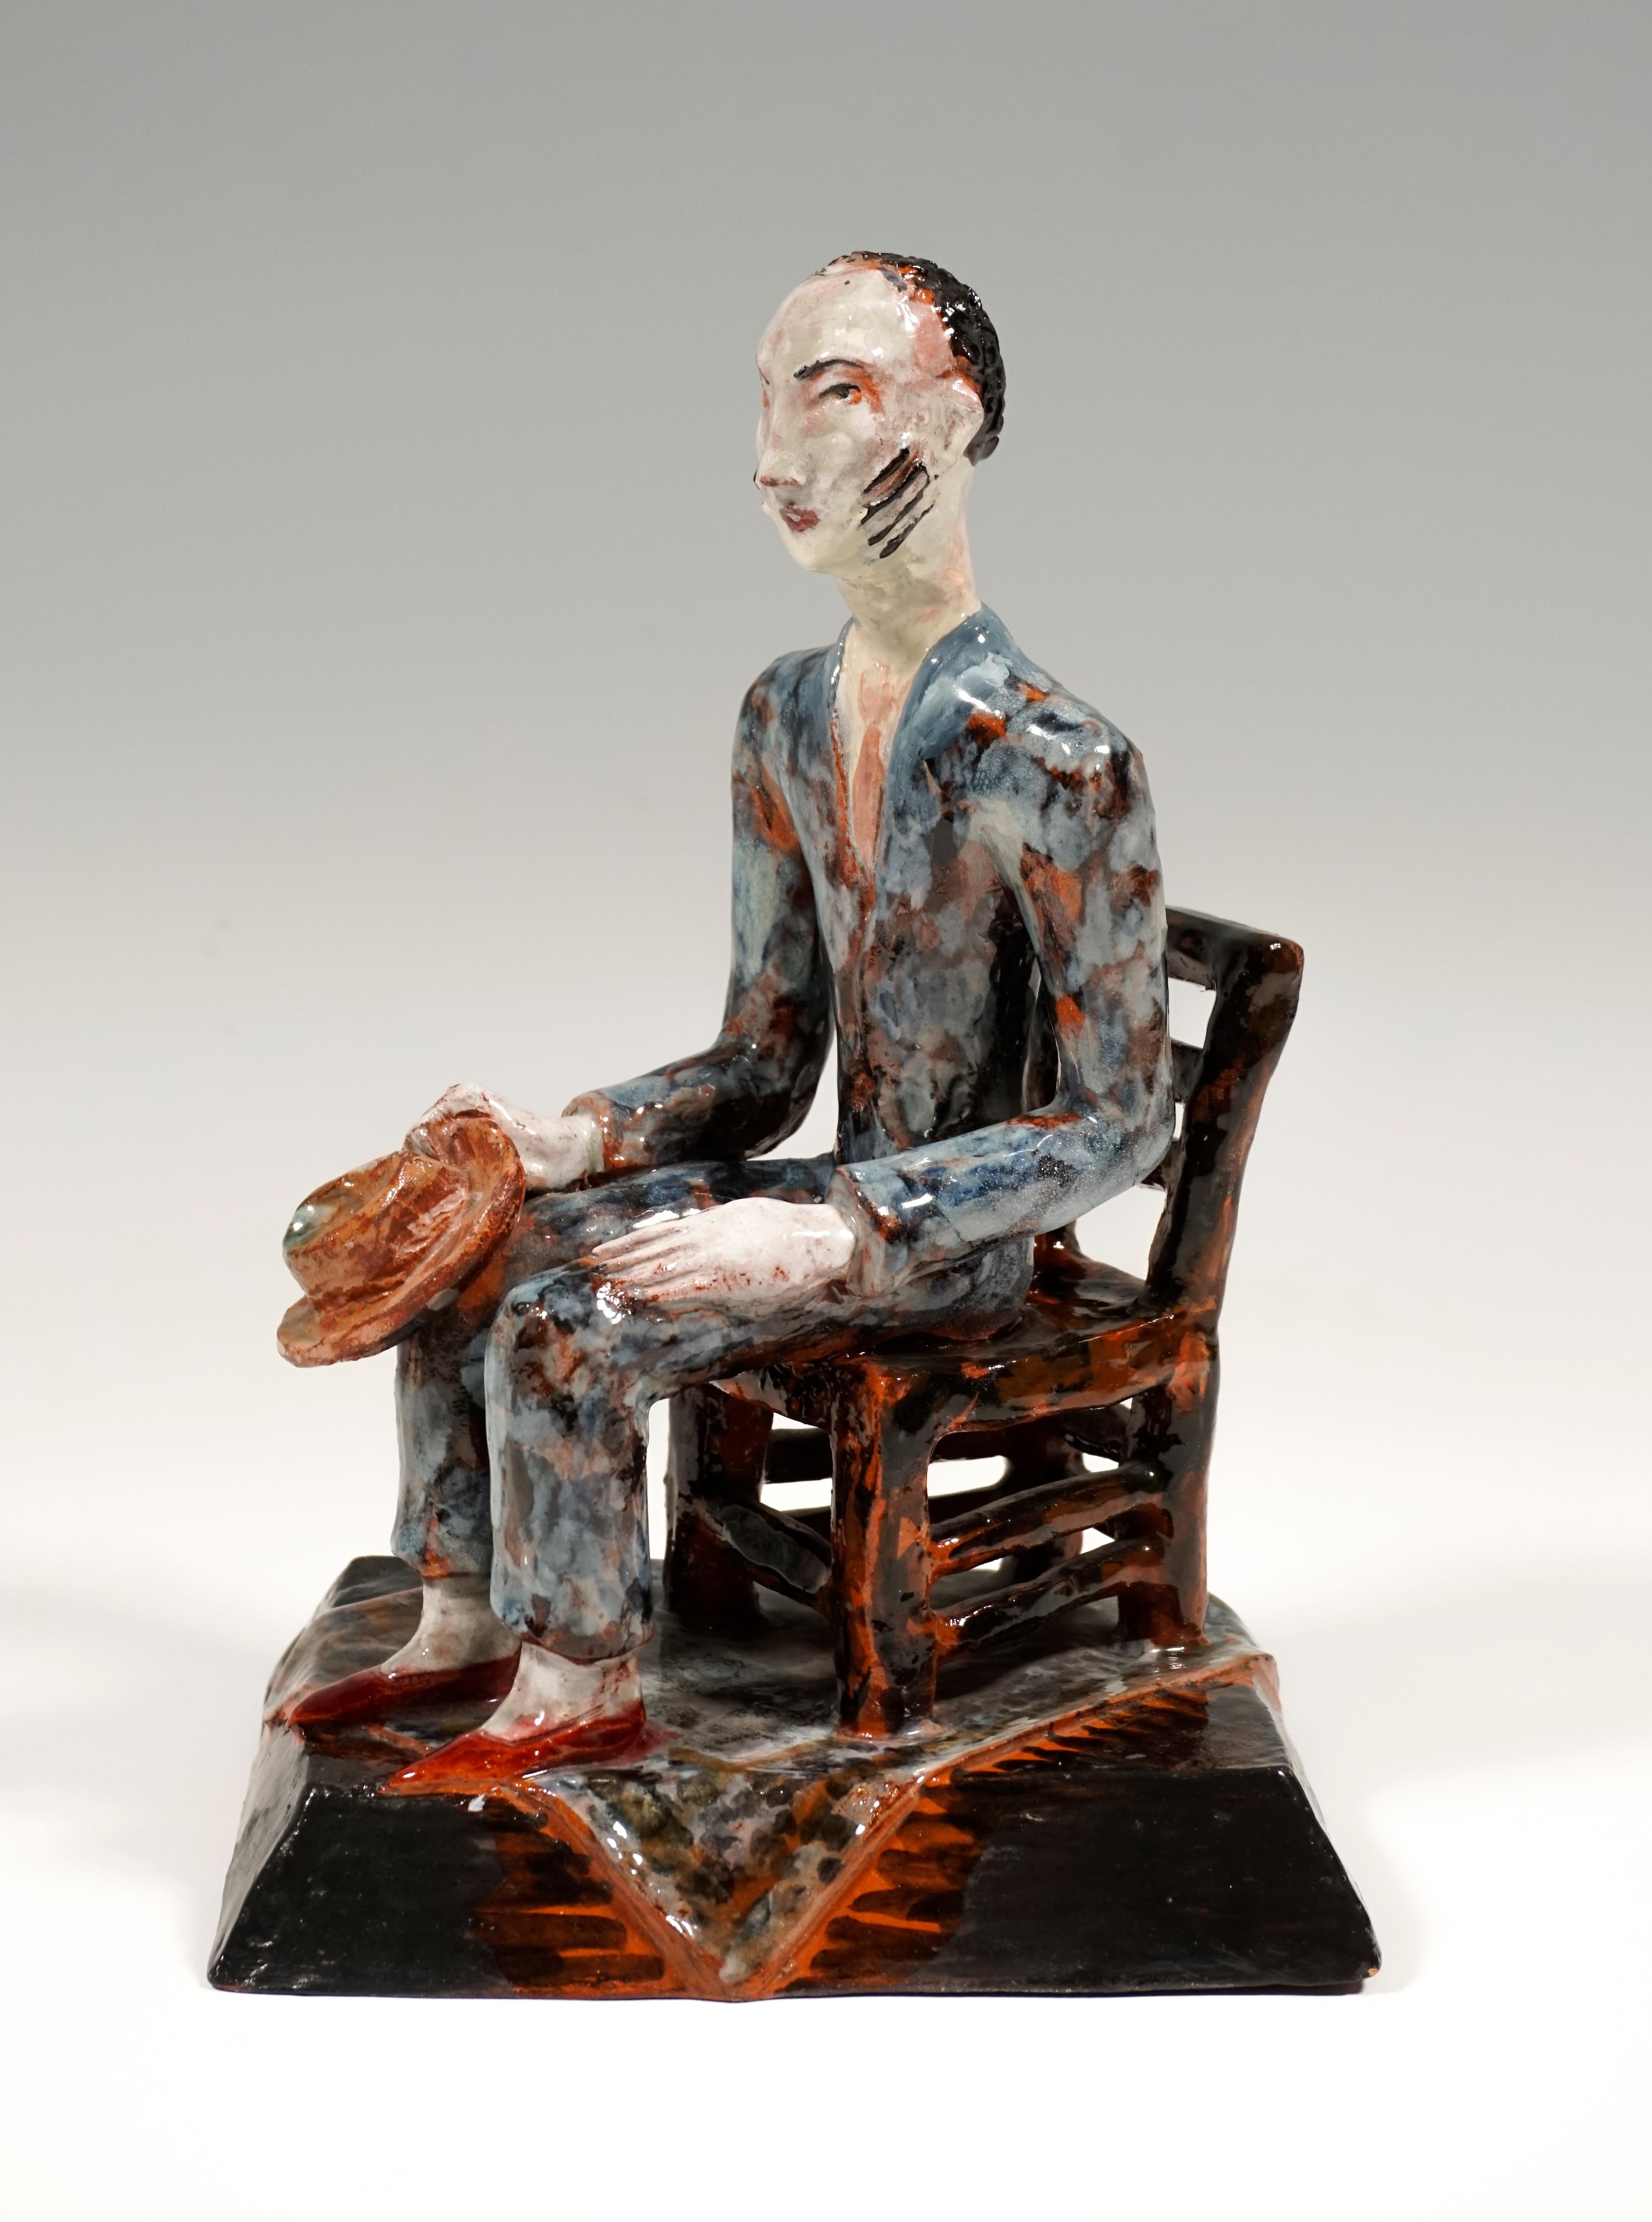 Austrian Wiener Werkstaette Expressive Ceramic Figure 'Man On Chair' by Susi Singer 1927